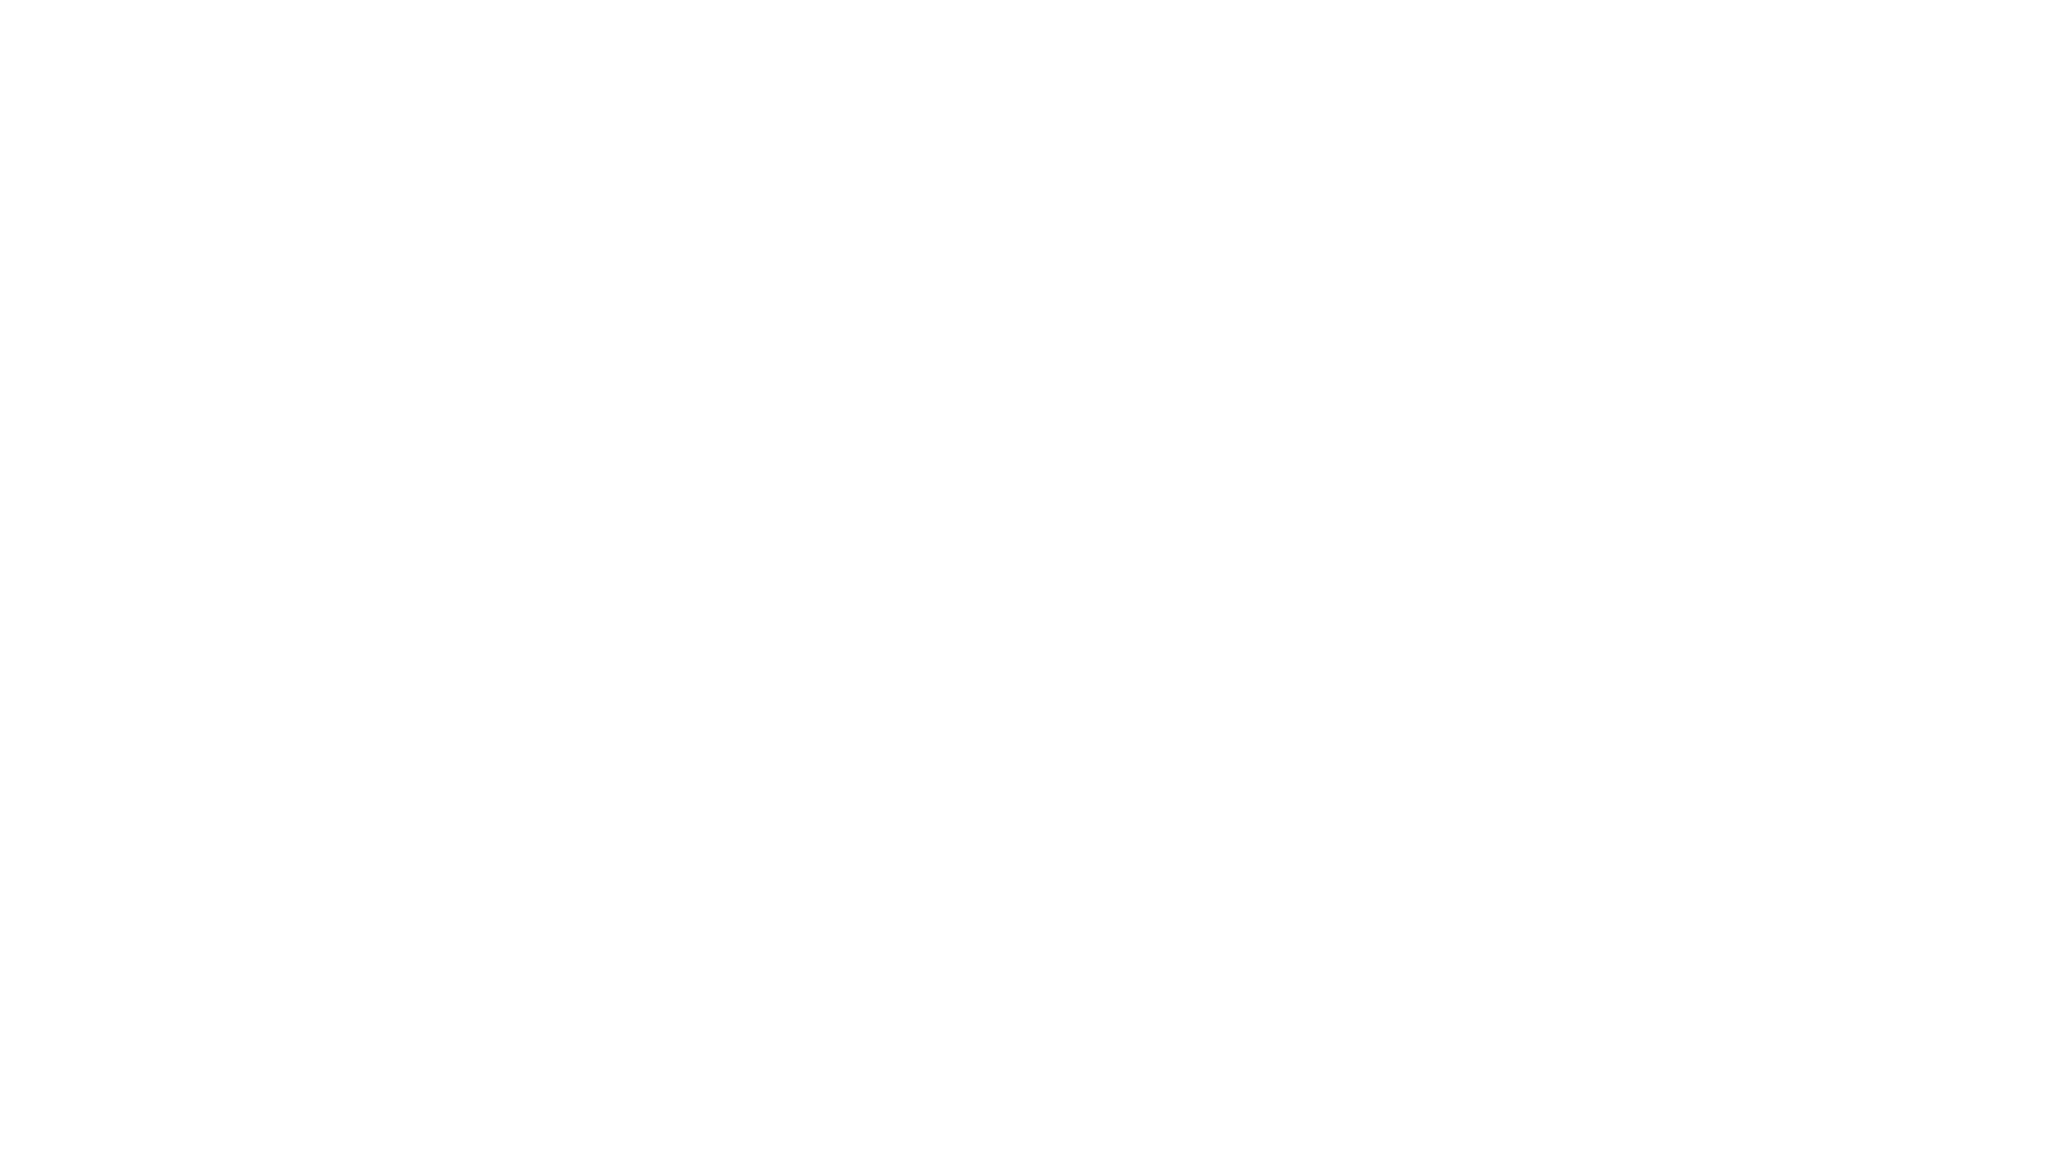 Le meilleur camping familial des Etats-Unis